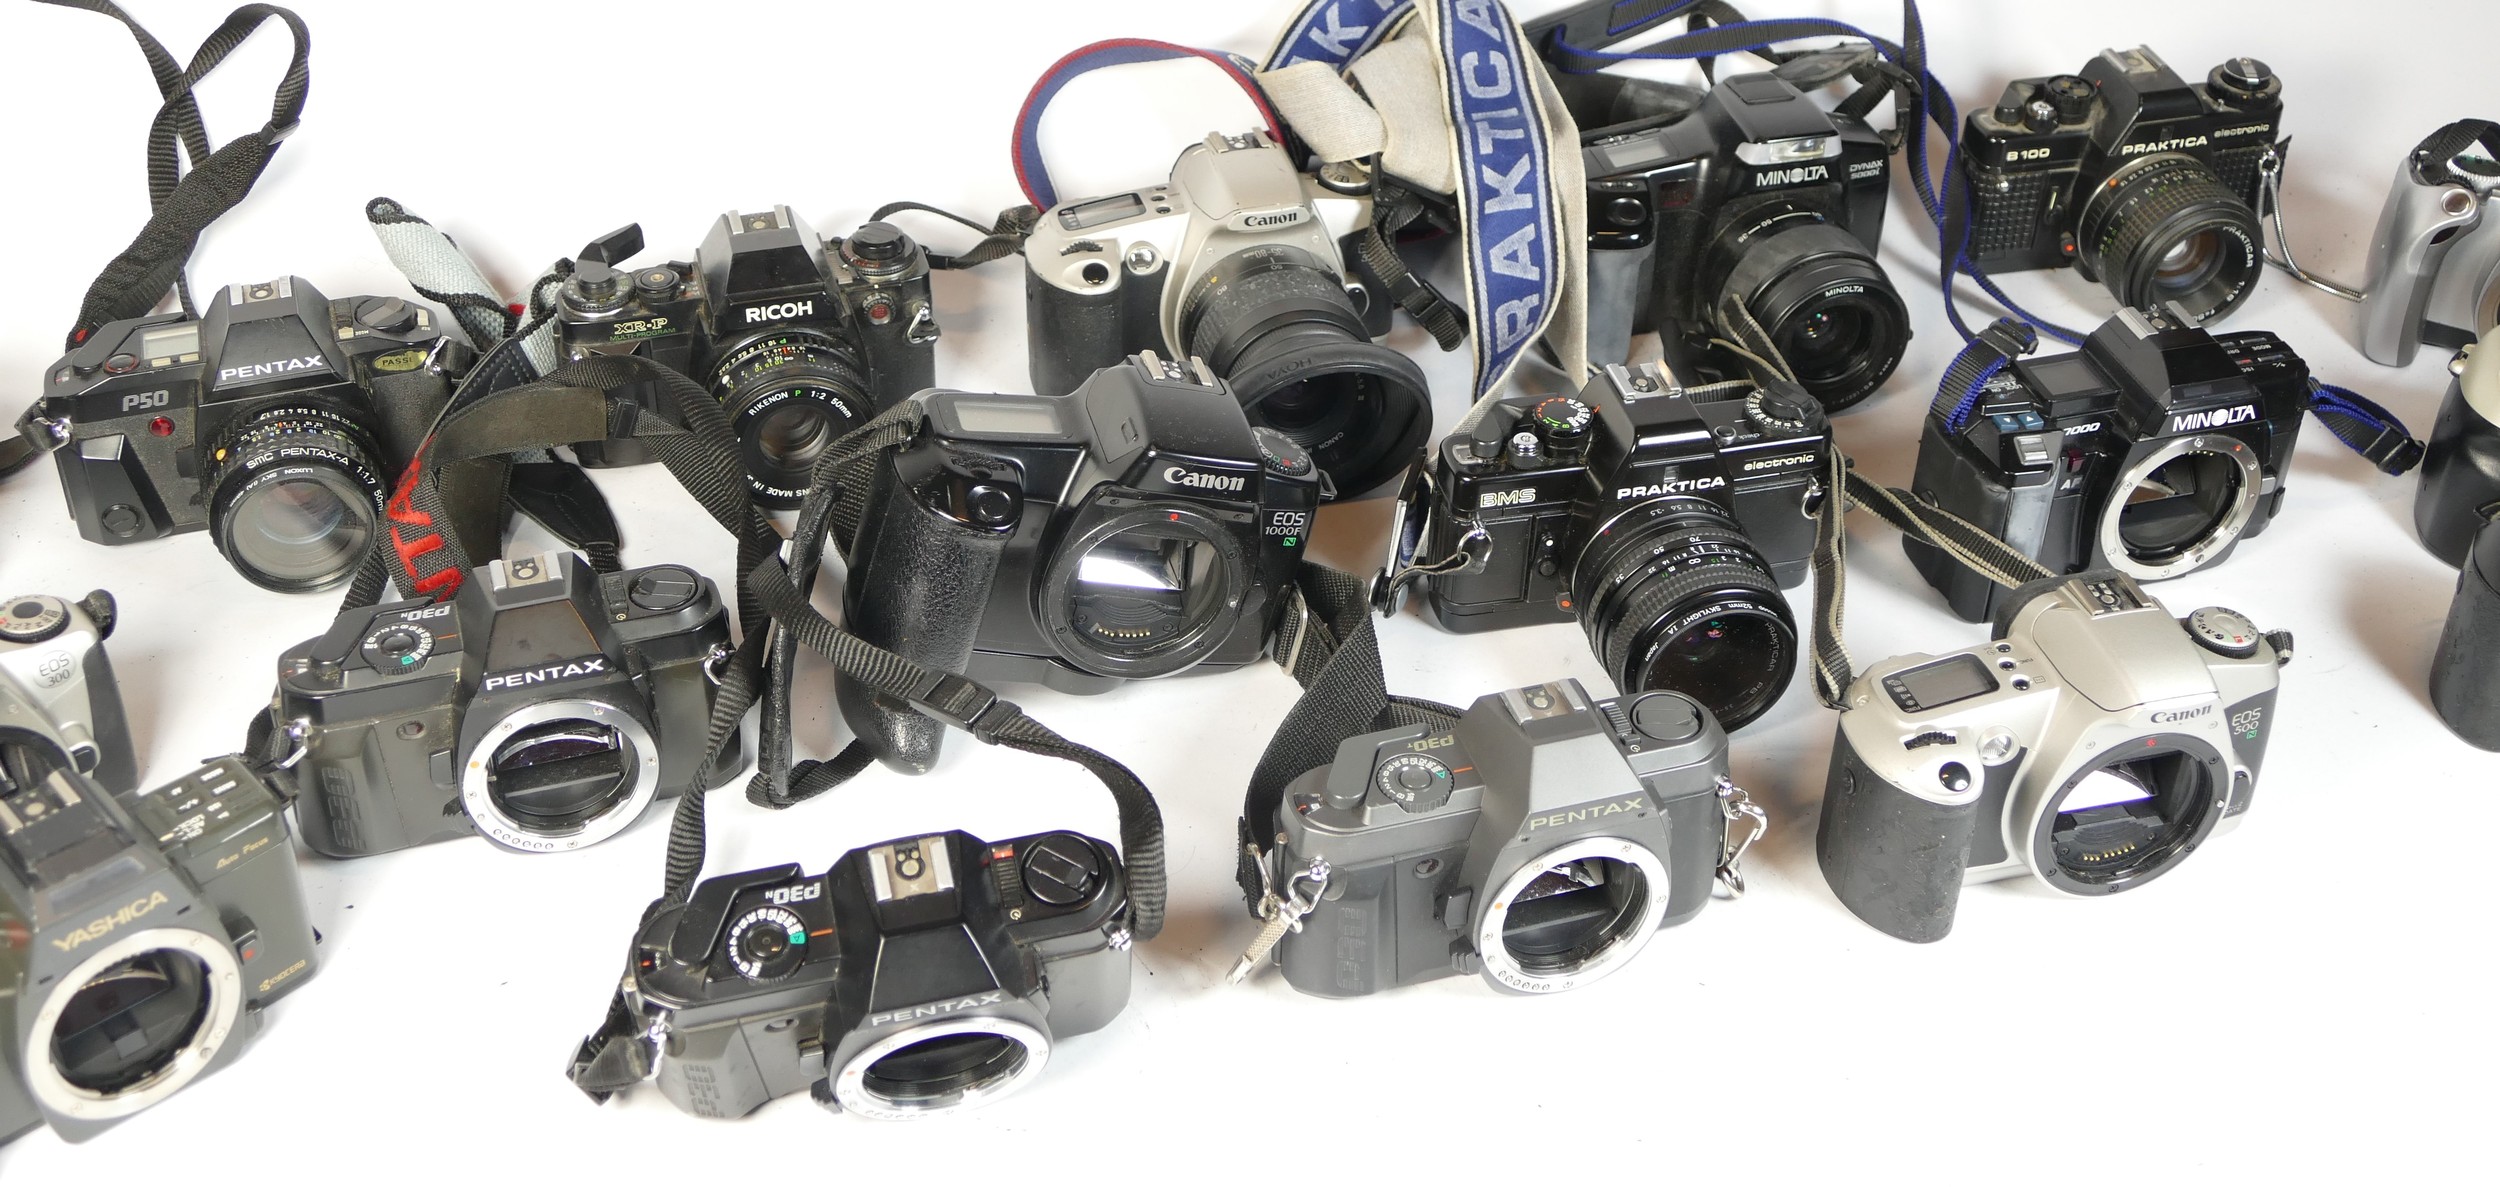 Twenty five SLR vintage film cameras to include a Nikon F80, a Ricoh XR-P, a Canon EOS 300 and a - Image 2 of 2